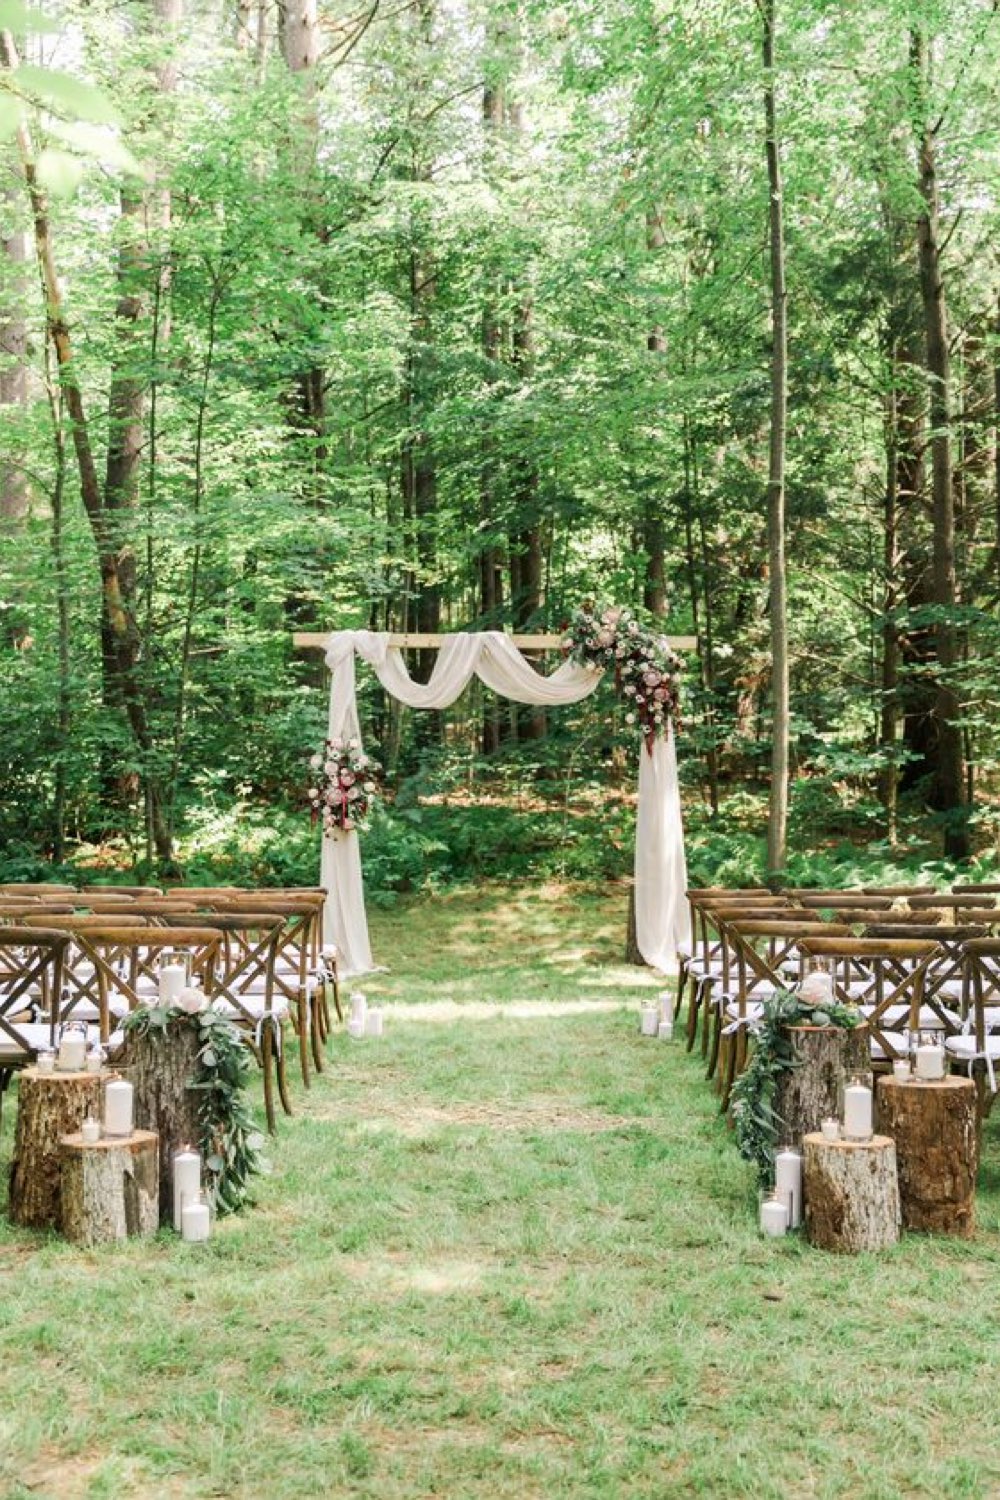 decoration mariage champetre romantique cérémonie en extérieur arche voilage fleur chaises en bois pour les invités